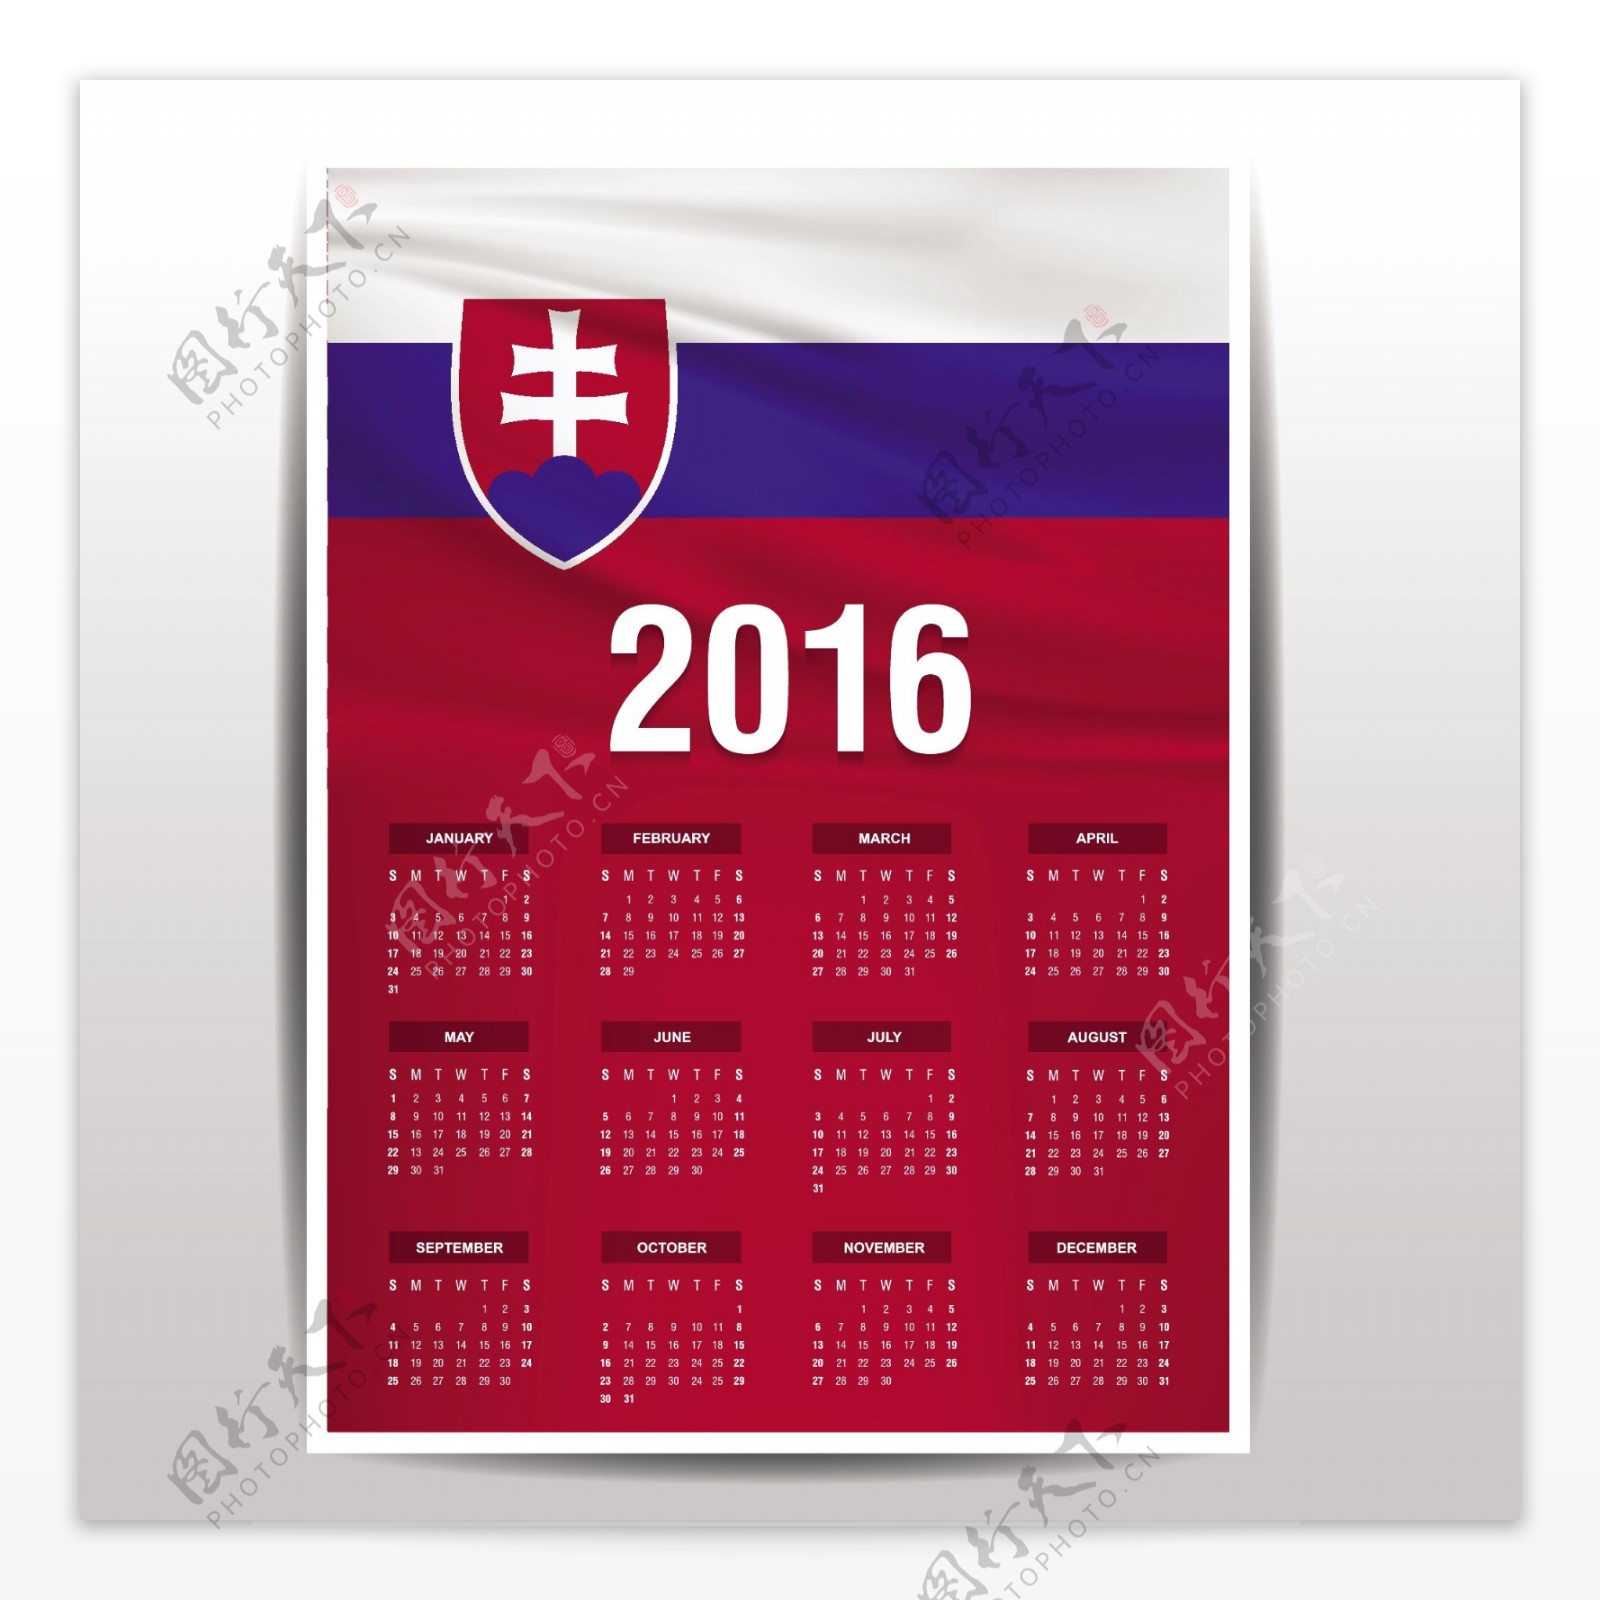 斯洛伐克日历2016